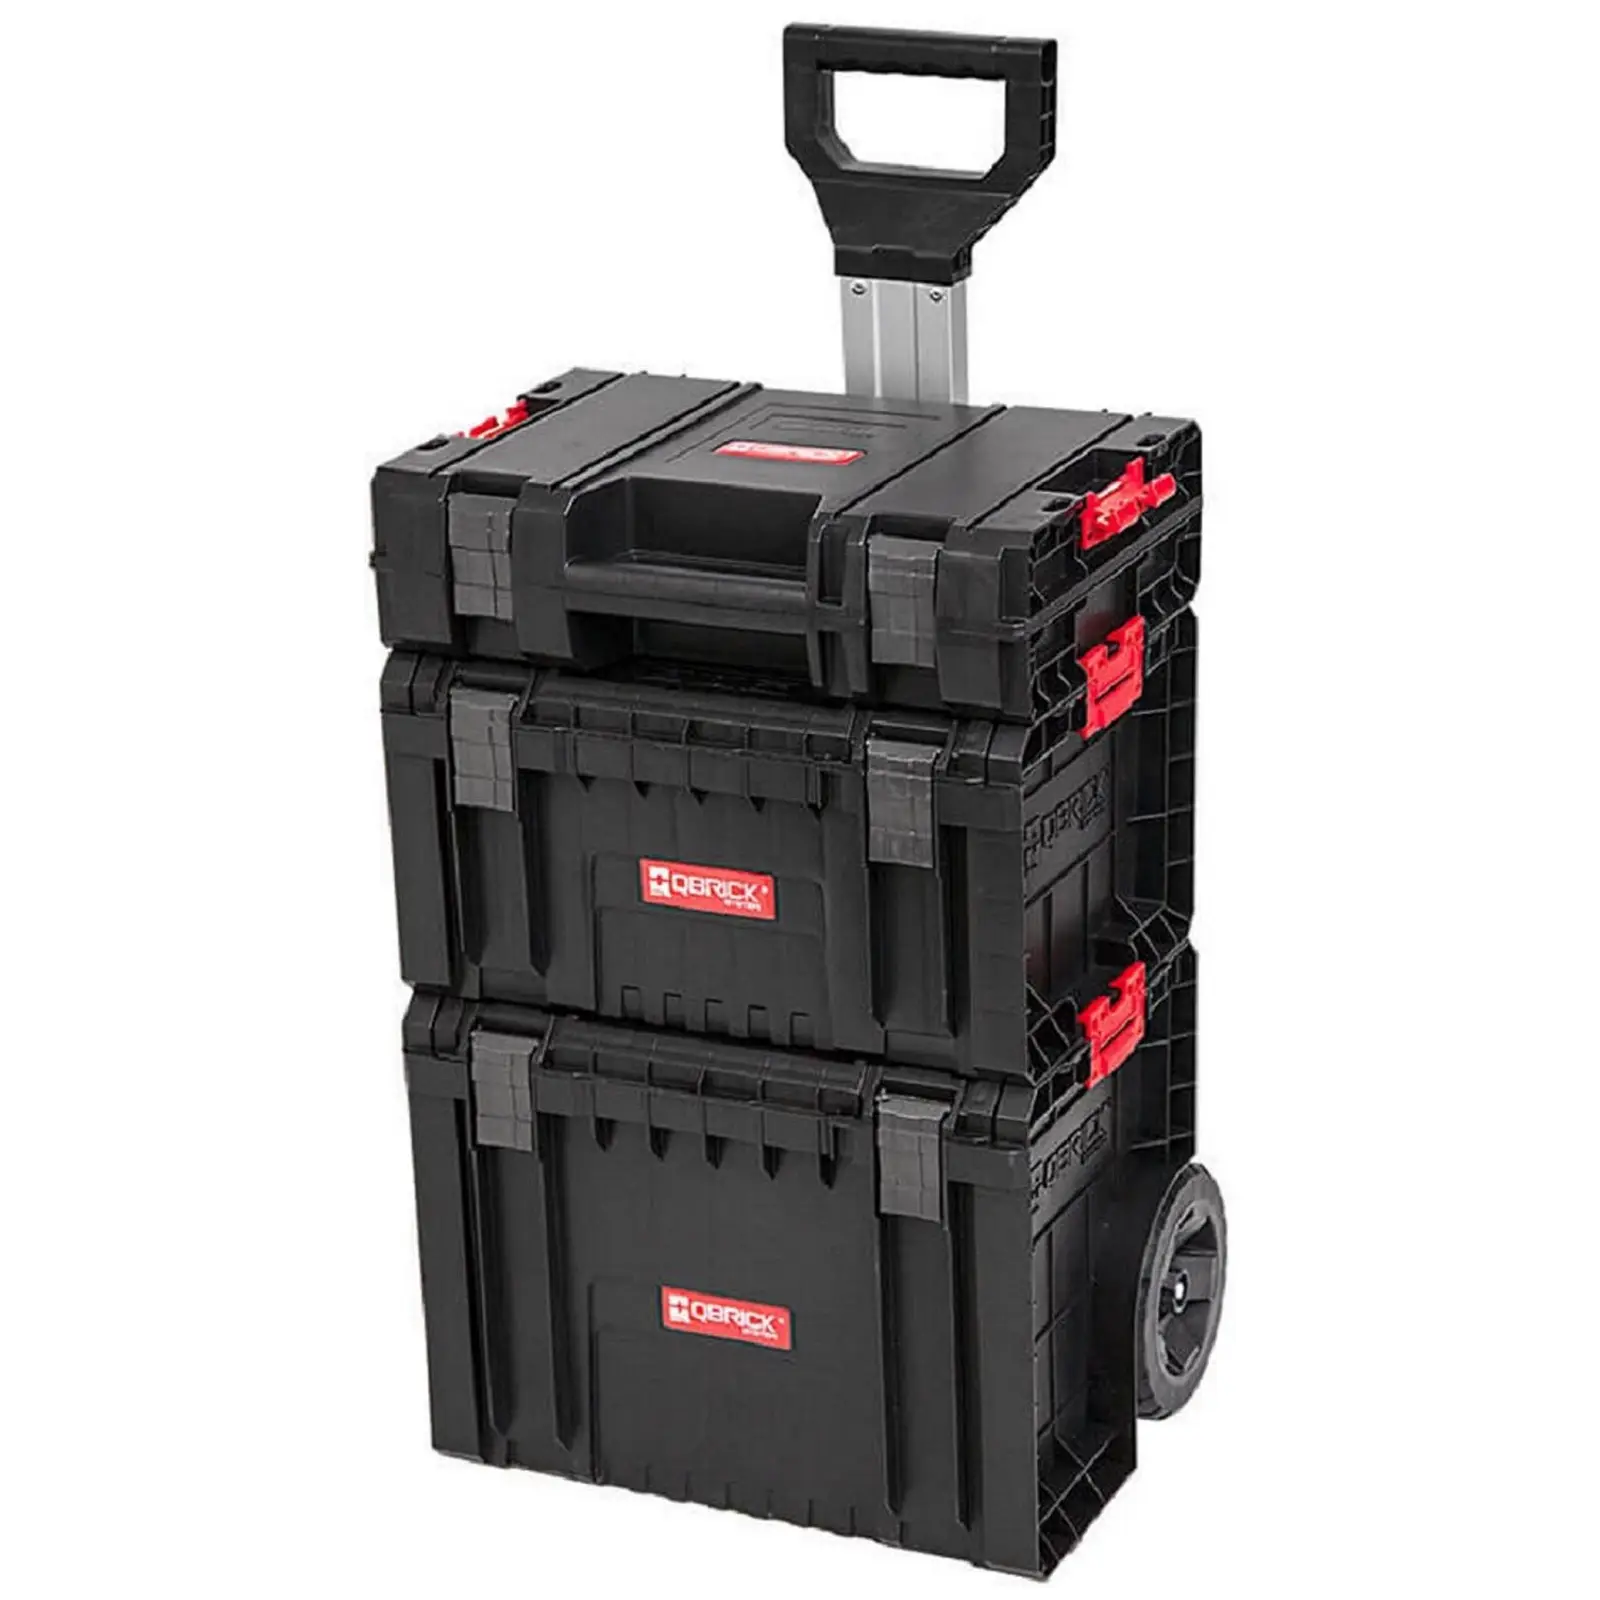 Carrinho de ferramentas System Pro - kit com carrinho, recipiente e maleta